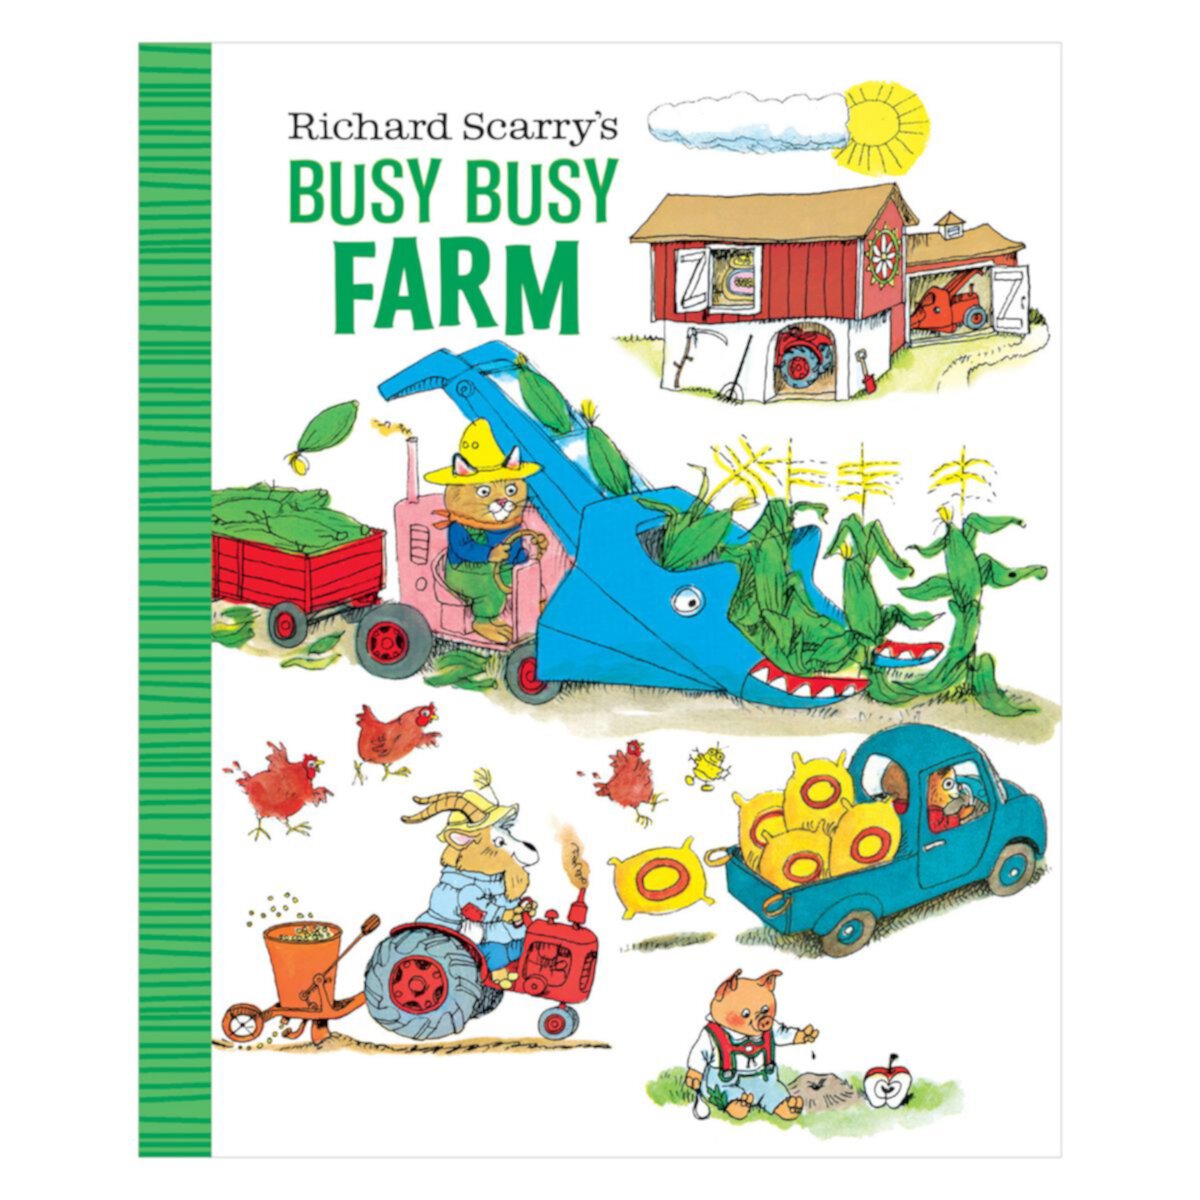 Richard Scarry's Busy Busy Farm Children's Book Penguin Random House